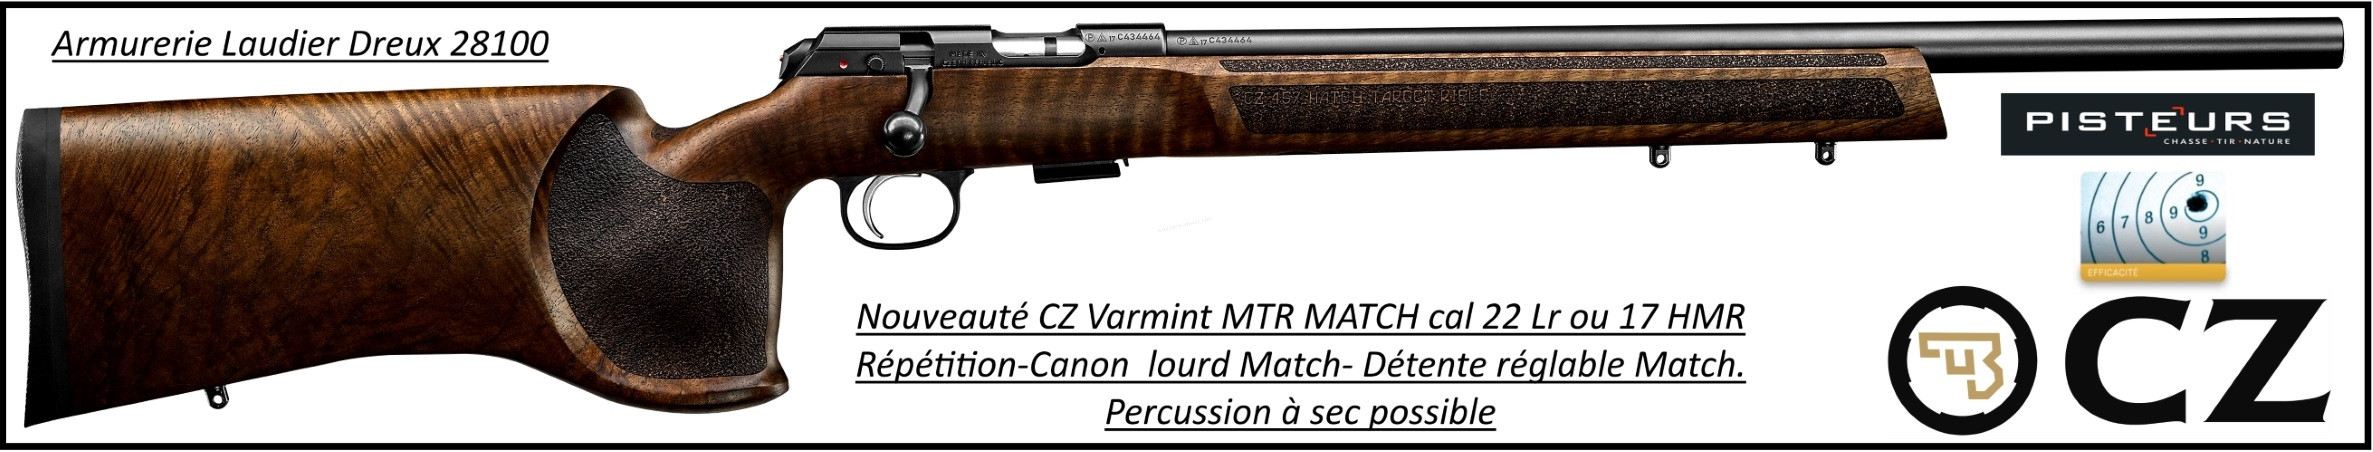 Carabine CZ Mod 457 Varmint MTR MATCH Calibre 22 LR Répétition -Promotion-Ref CZ 457  varmint-22-781399